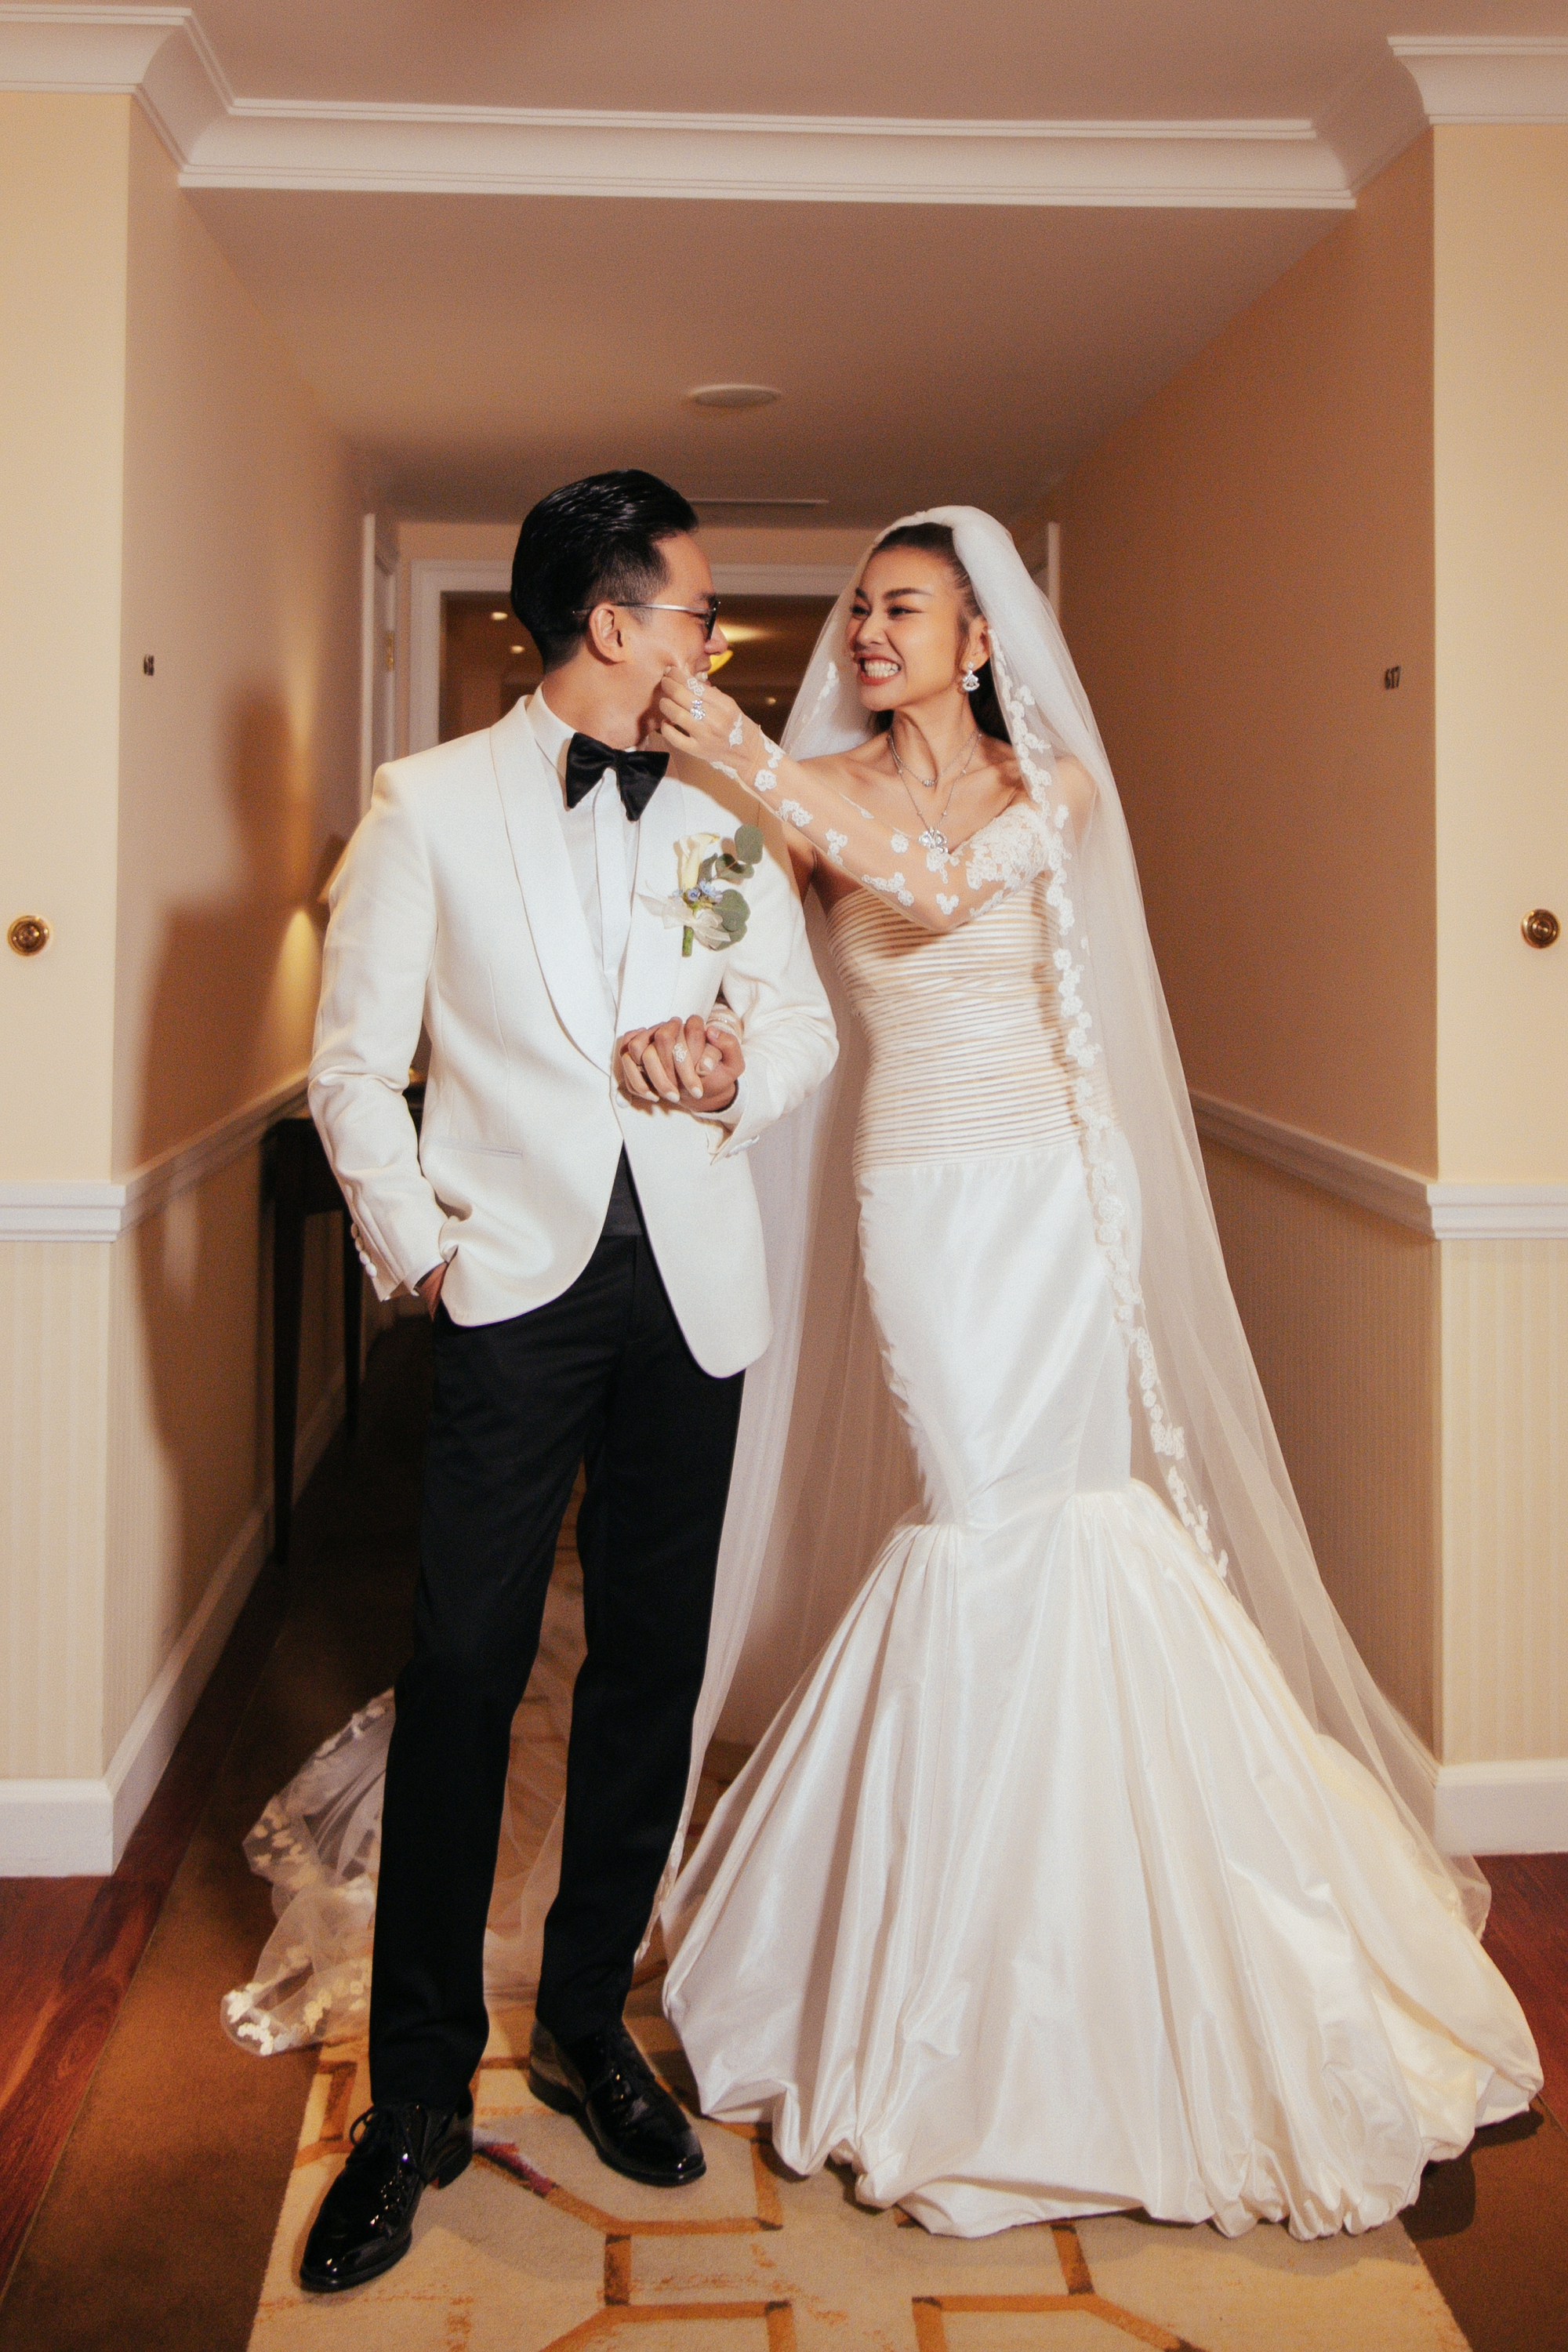 Siêu mẫu Thanh Hằng đeo trang sức hơn 10 tỉ đồng trong đám cưới - Ảnh 2.